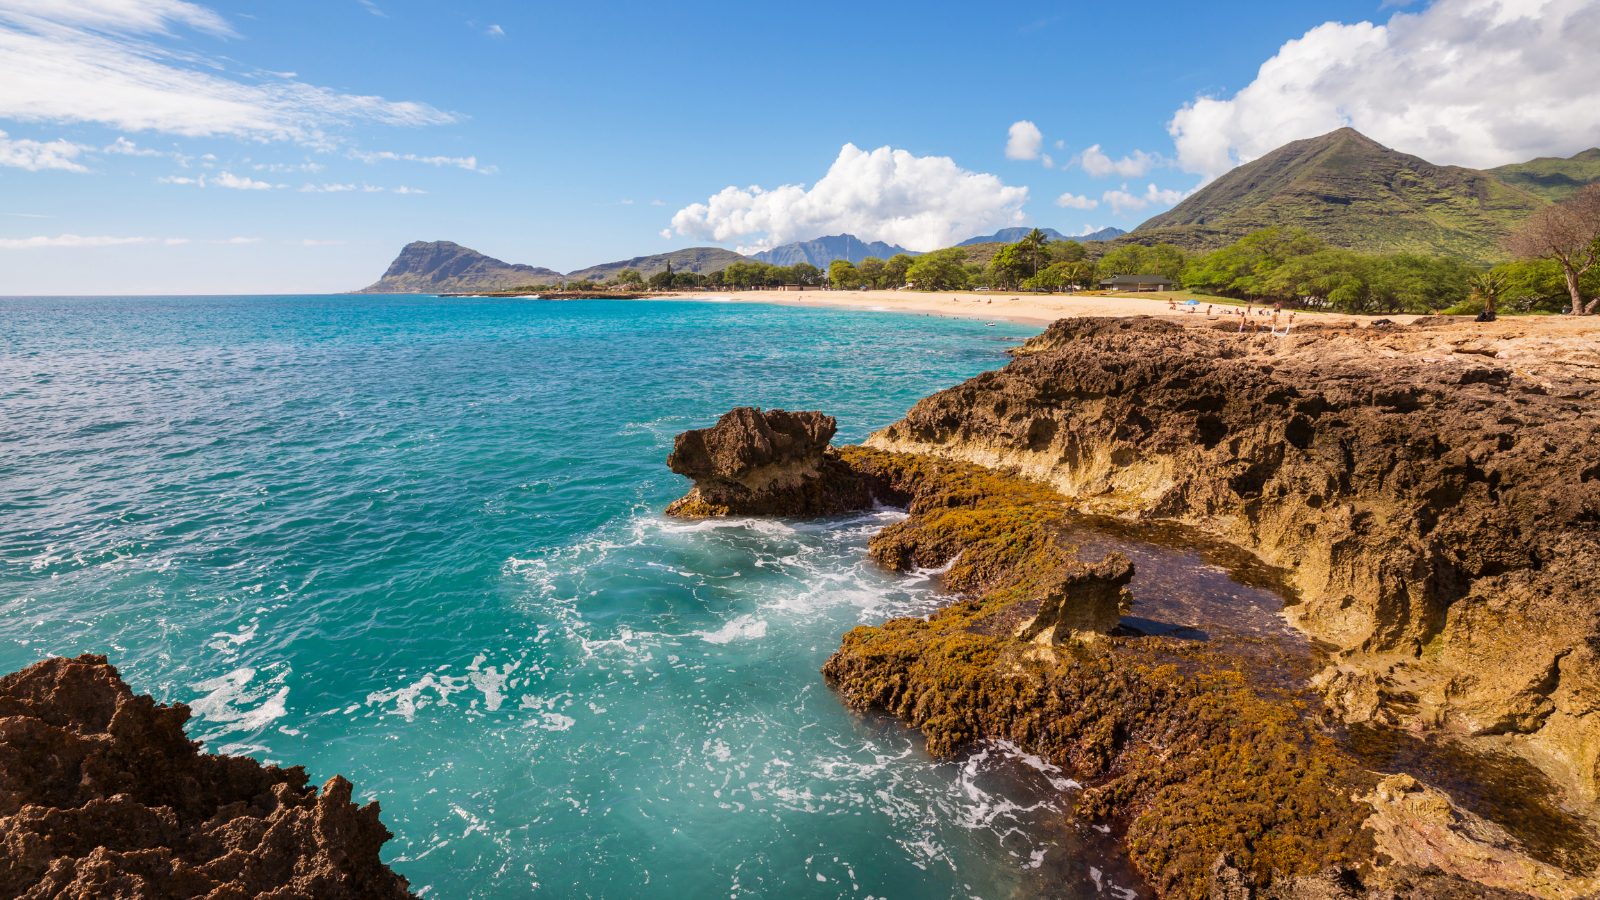 Stunning image of the Oahu coastline